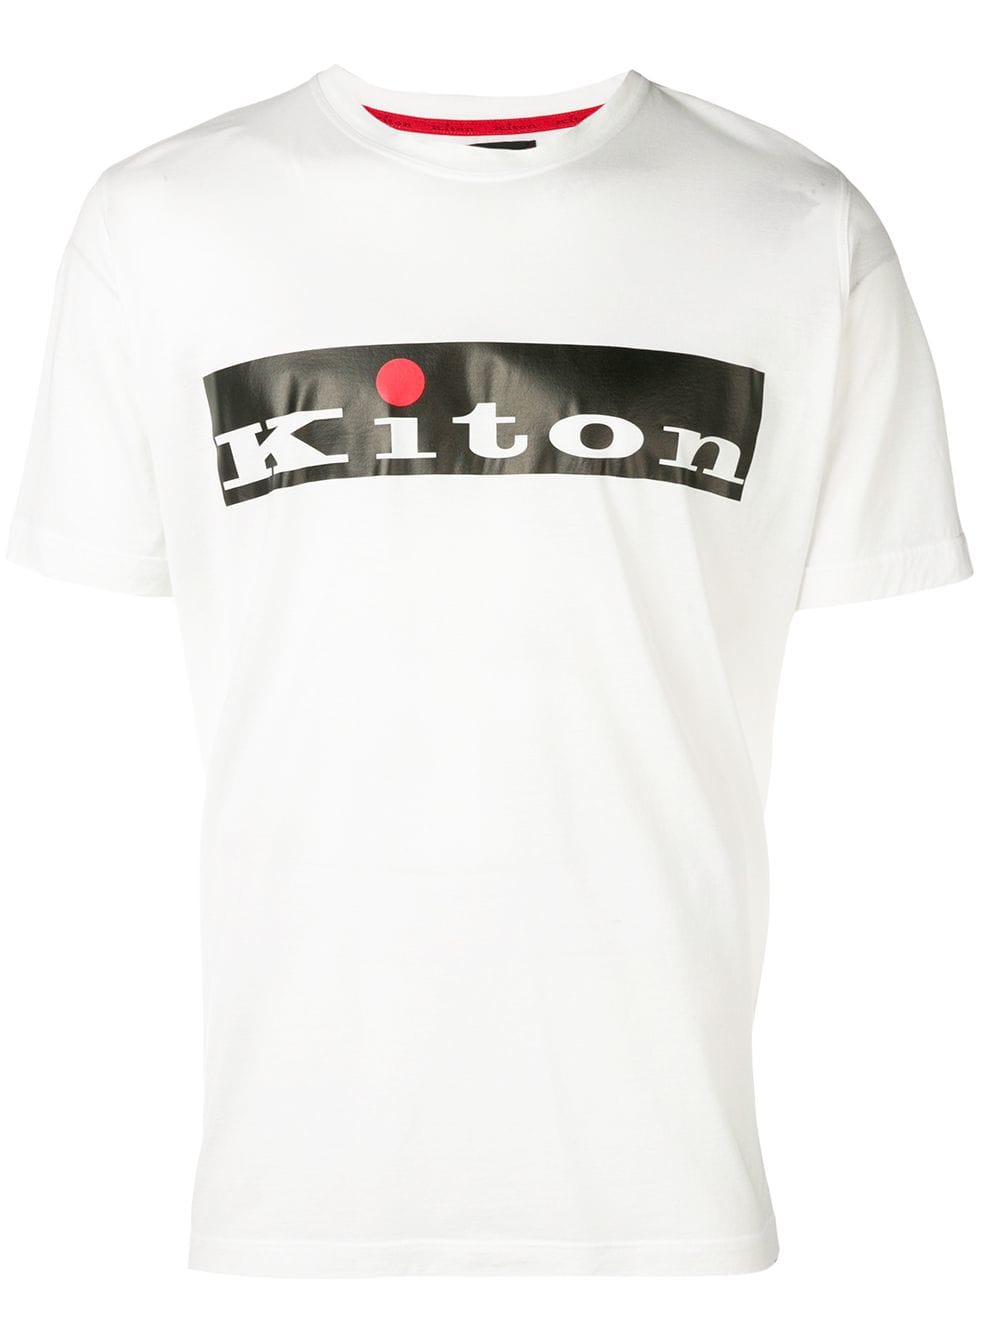 Kiton Logo - KITON KITON LOGO PRINT T-SHIRT - HE30 WHITE. #kiton #cloth | Kiton ...